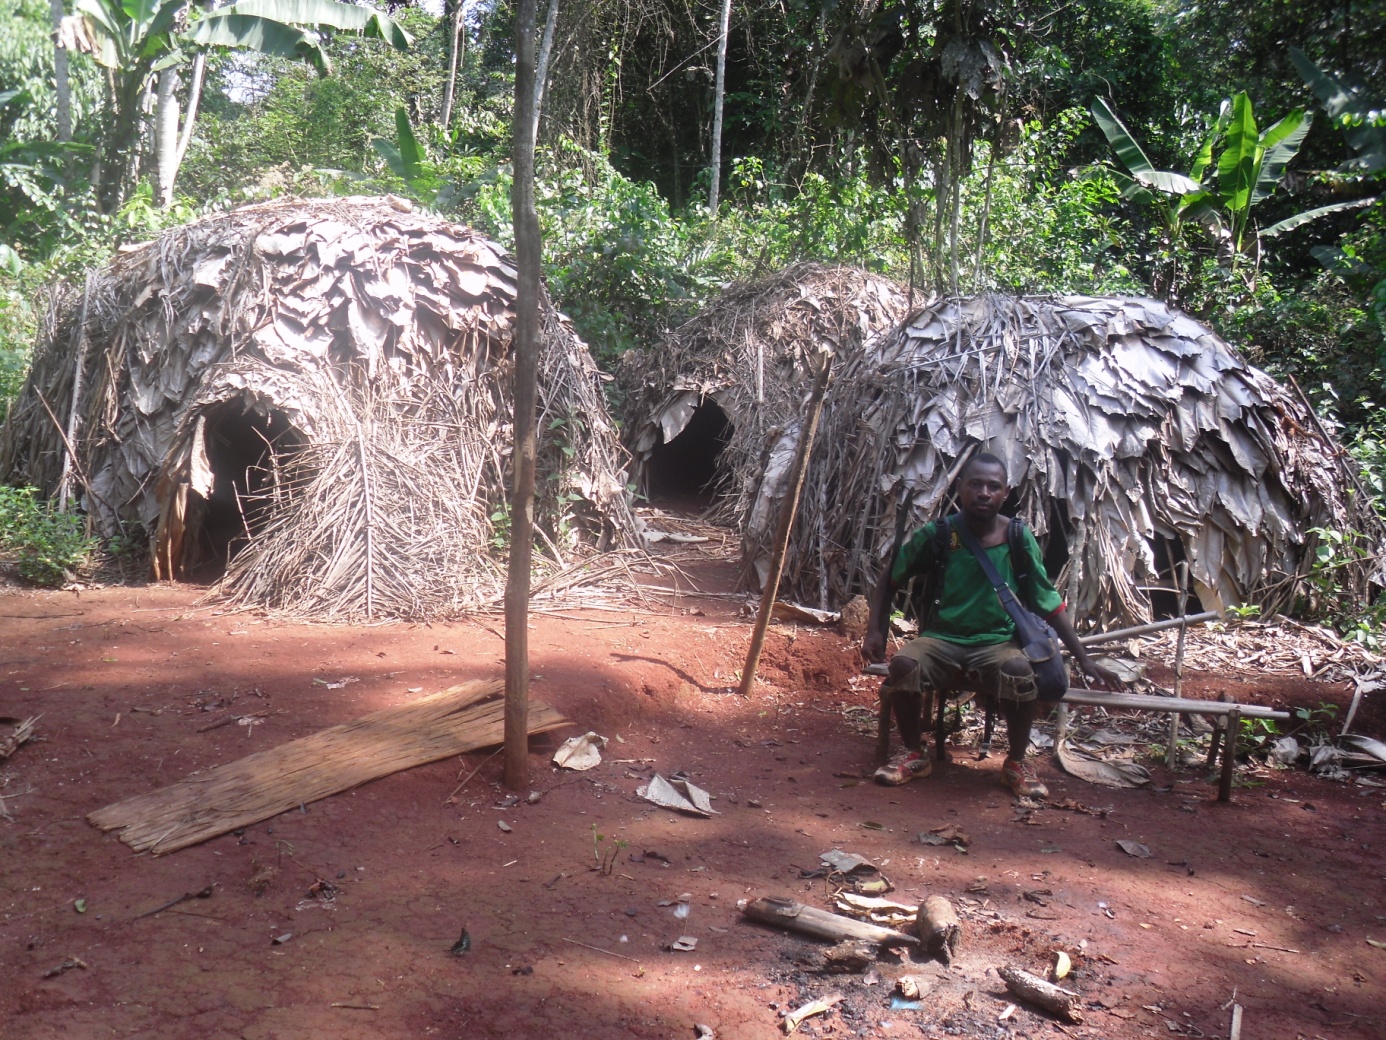 Experiencias de los pueblos indígenas de África con las políticas de salvaguardia - Ejemplos de Camerún y la cuenca del Congo | FPP